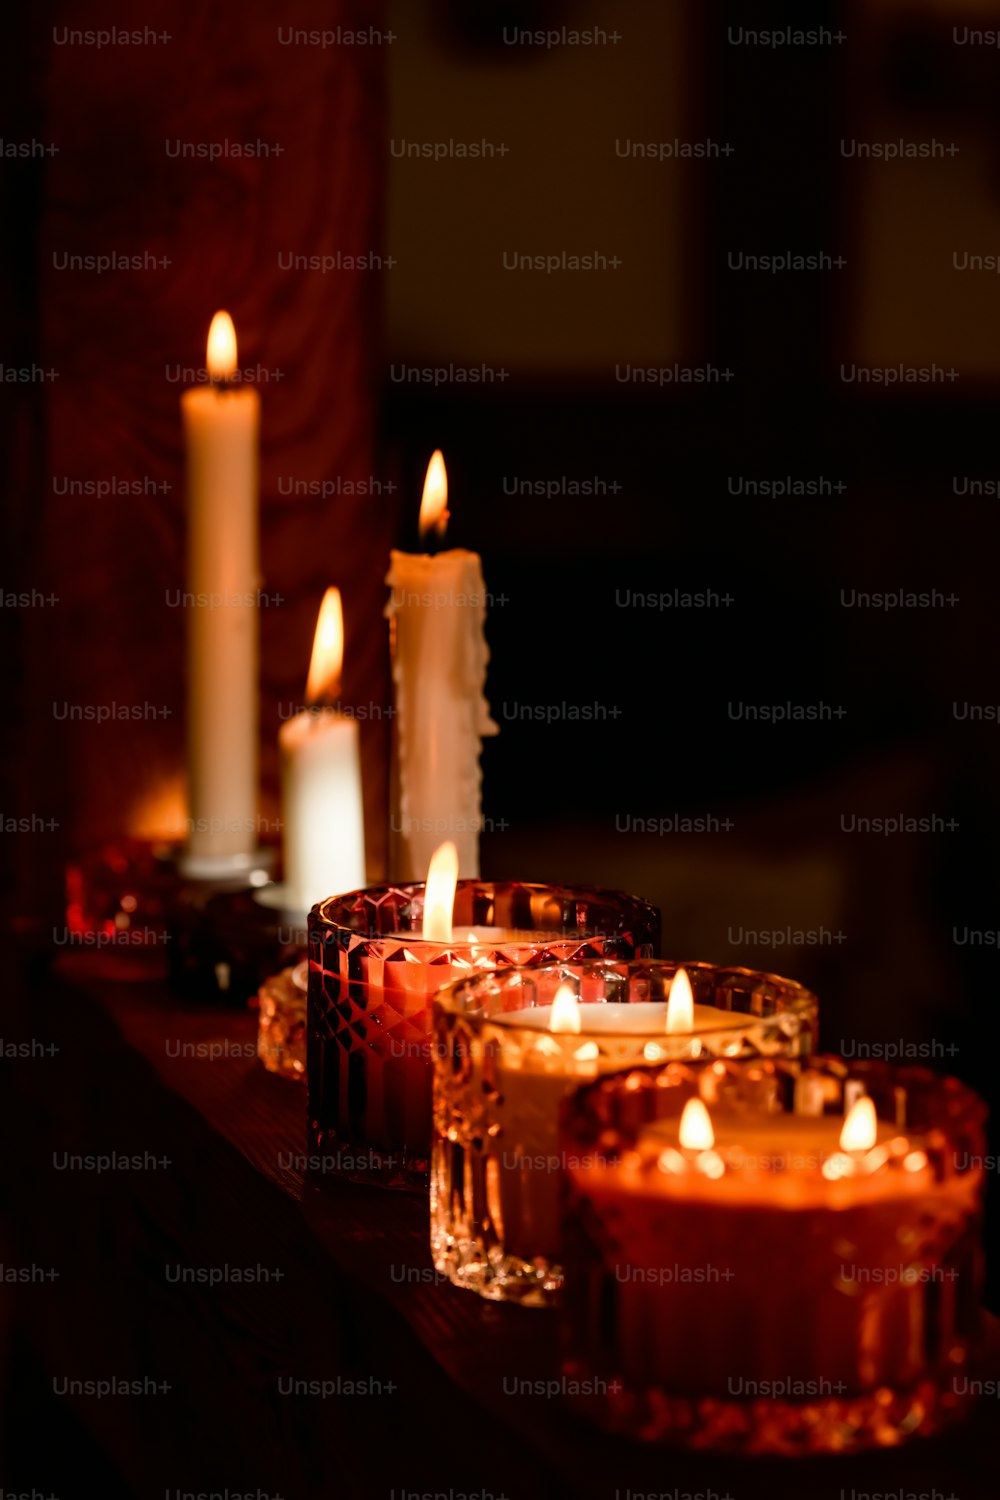 un groupe de bougies allumées assises sur une table